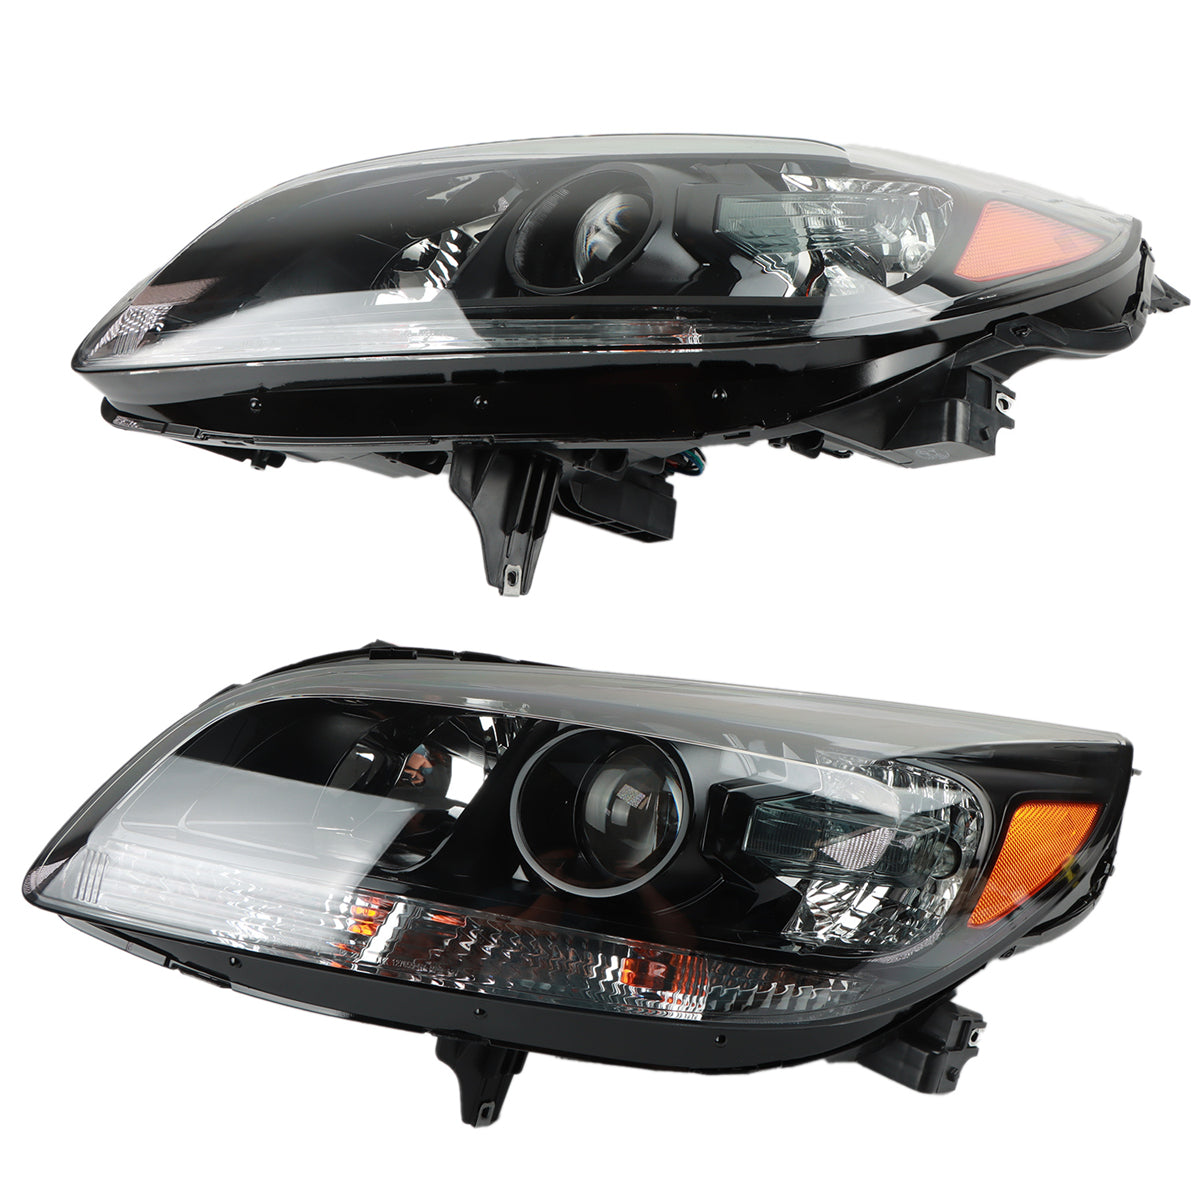  2pcs Headlight Assembly, Headlight Assembly for 2013 to 2016, Headlight Assembly Chevy Malibu, Car Headlight Assembly